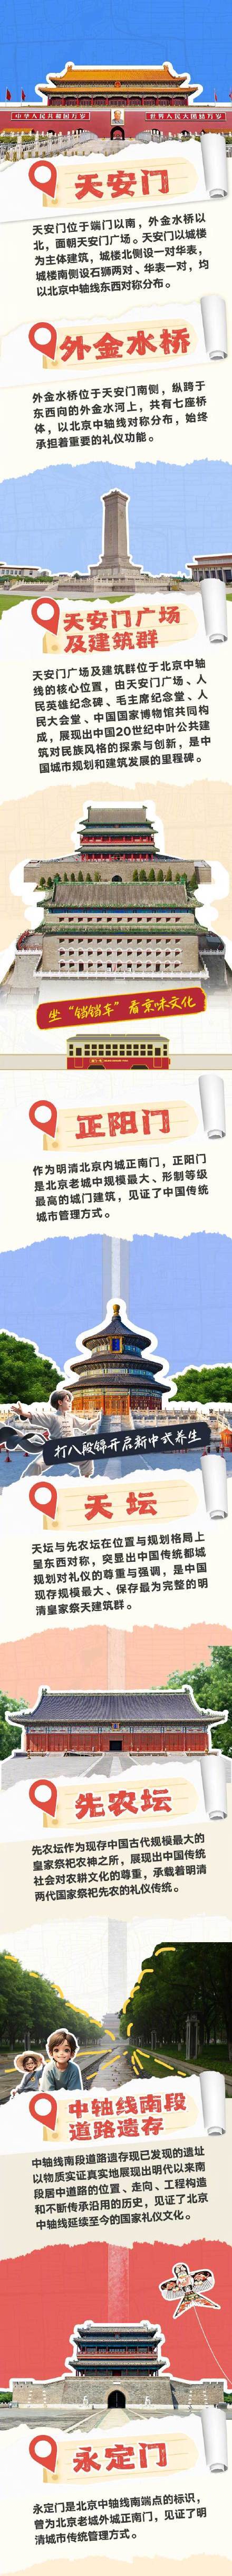 北京中轴线CityWalk攻略 文化遗产新旅程